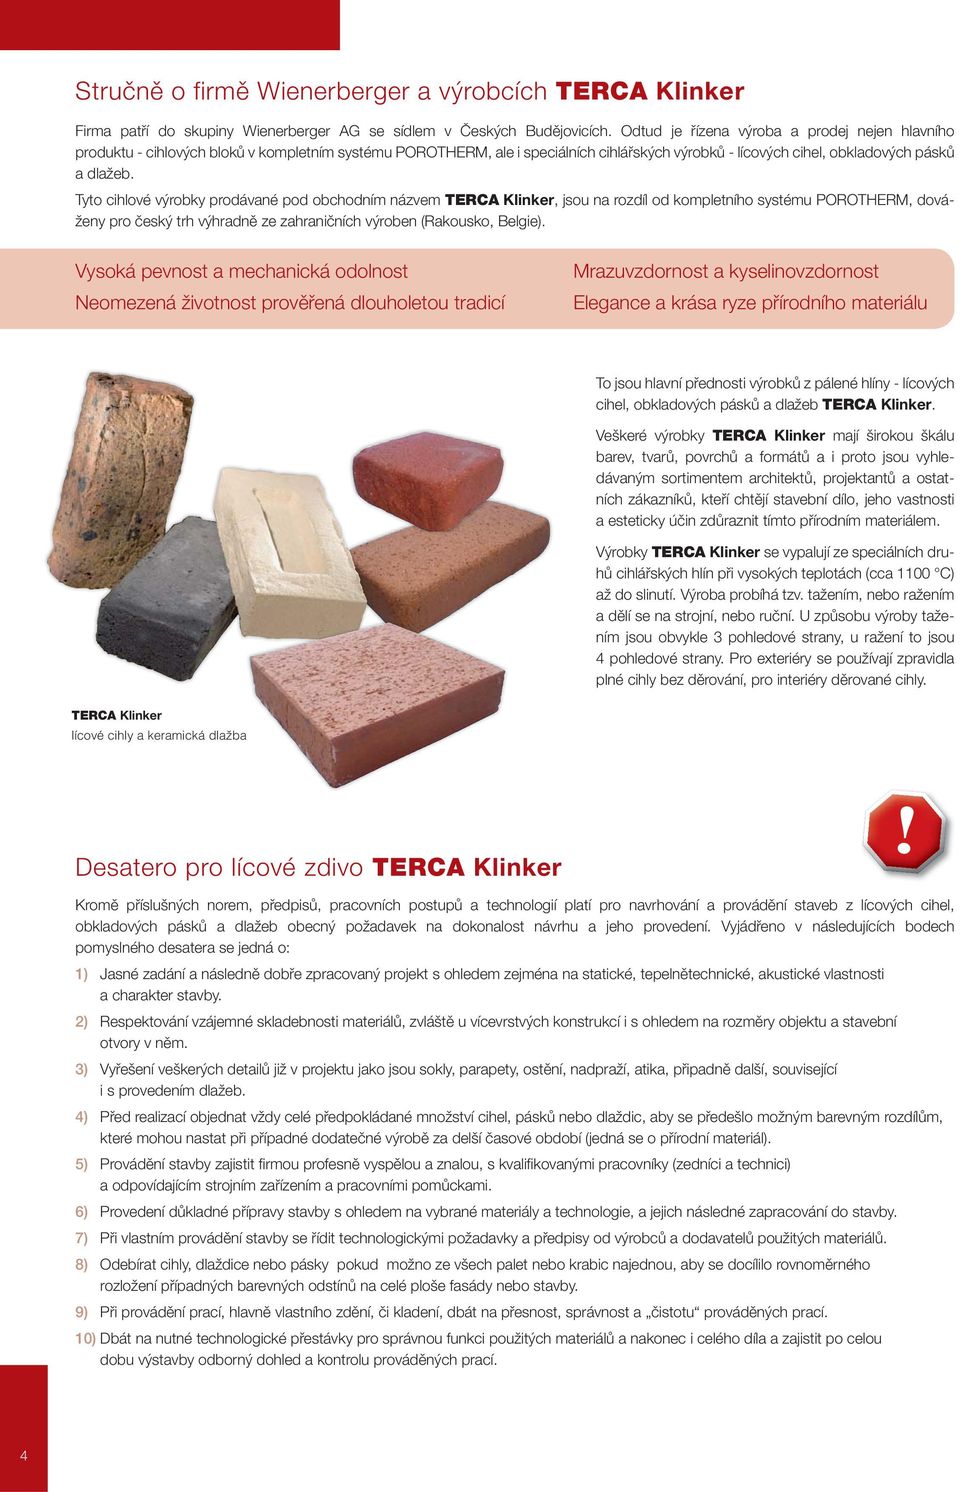 Tyto cihlové výrobky prodávané pod obchodním názvem TERCA Klinker, jsou na rozdíl od kompletního systému POROTHERM, dováženy pro český trh výhradně ze zahraničních výroben (Rakousko, Belgie).